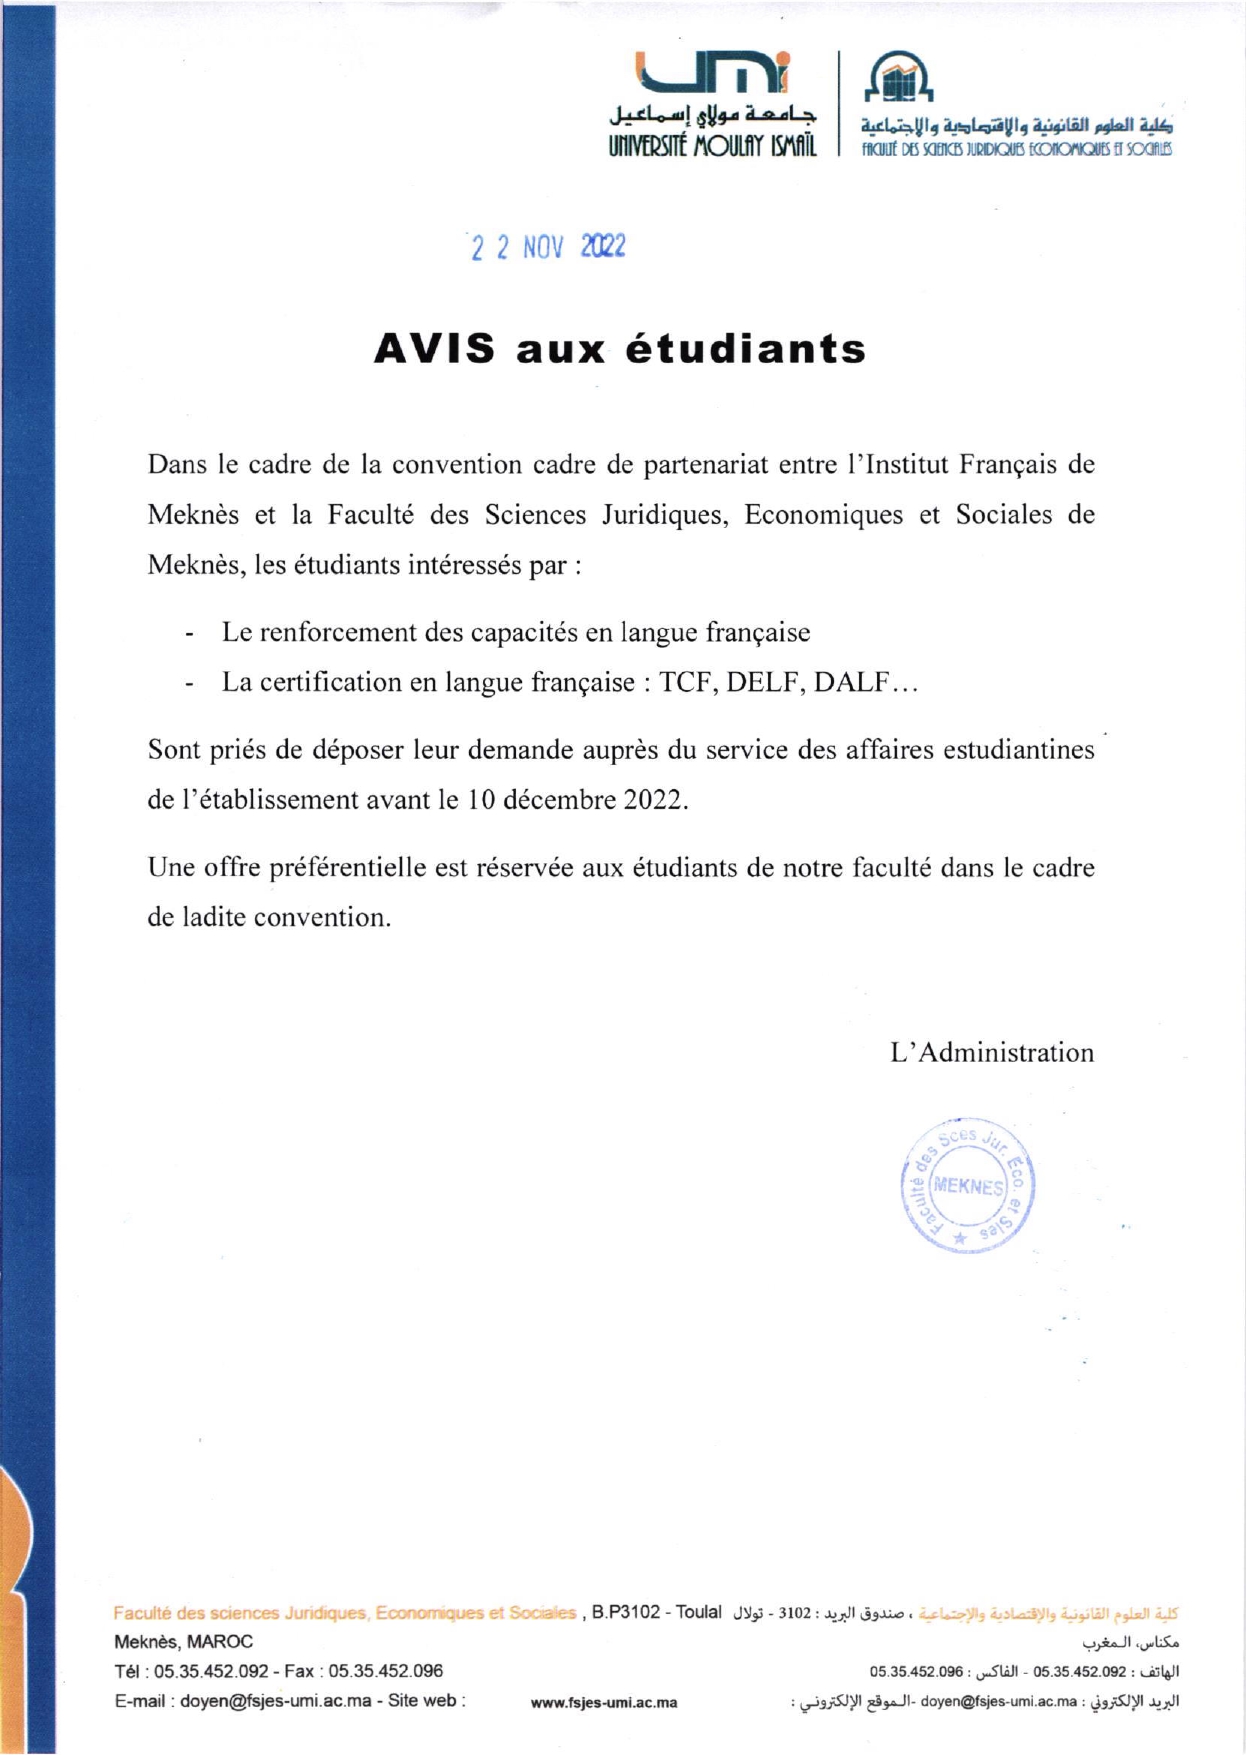 Avis aux étudiants : partenariat avec l’Institut Français de Meknès